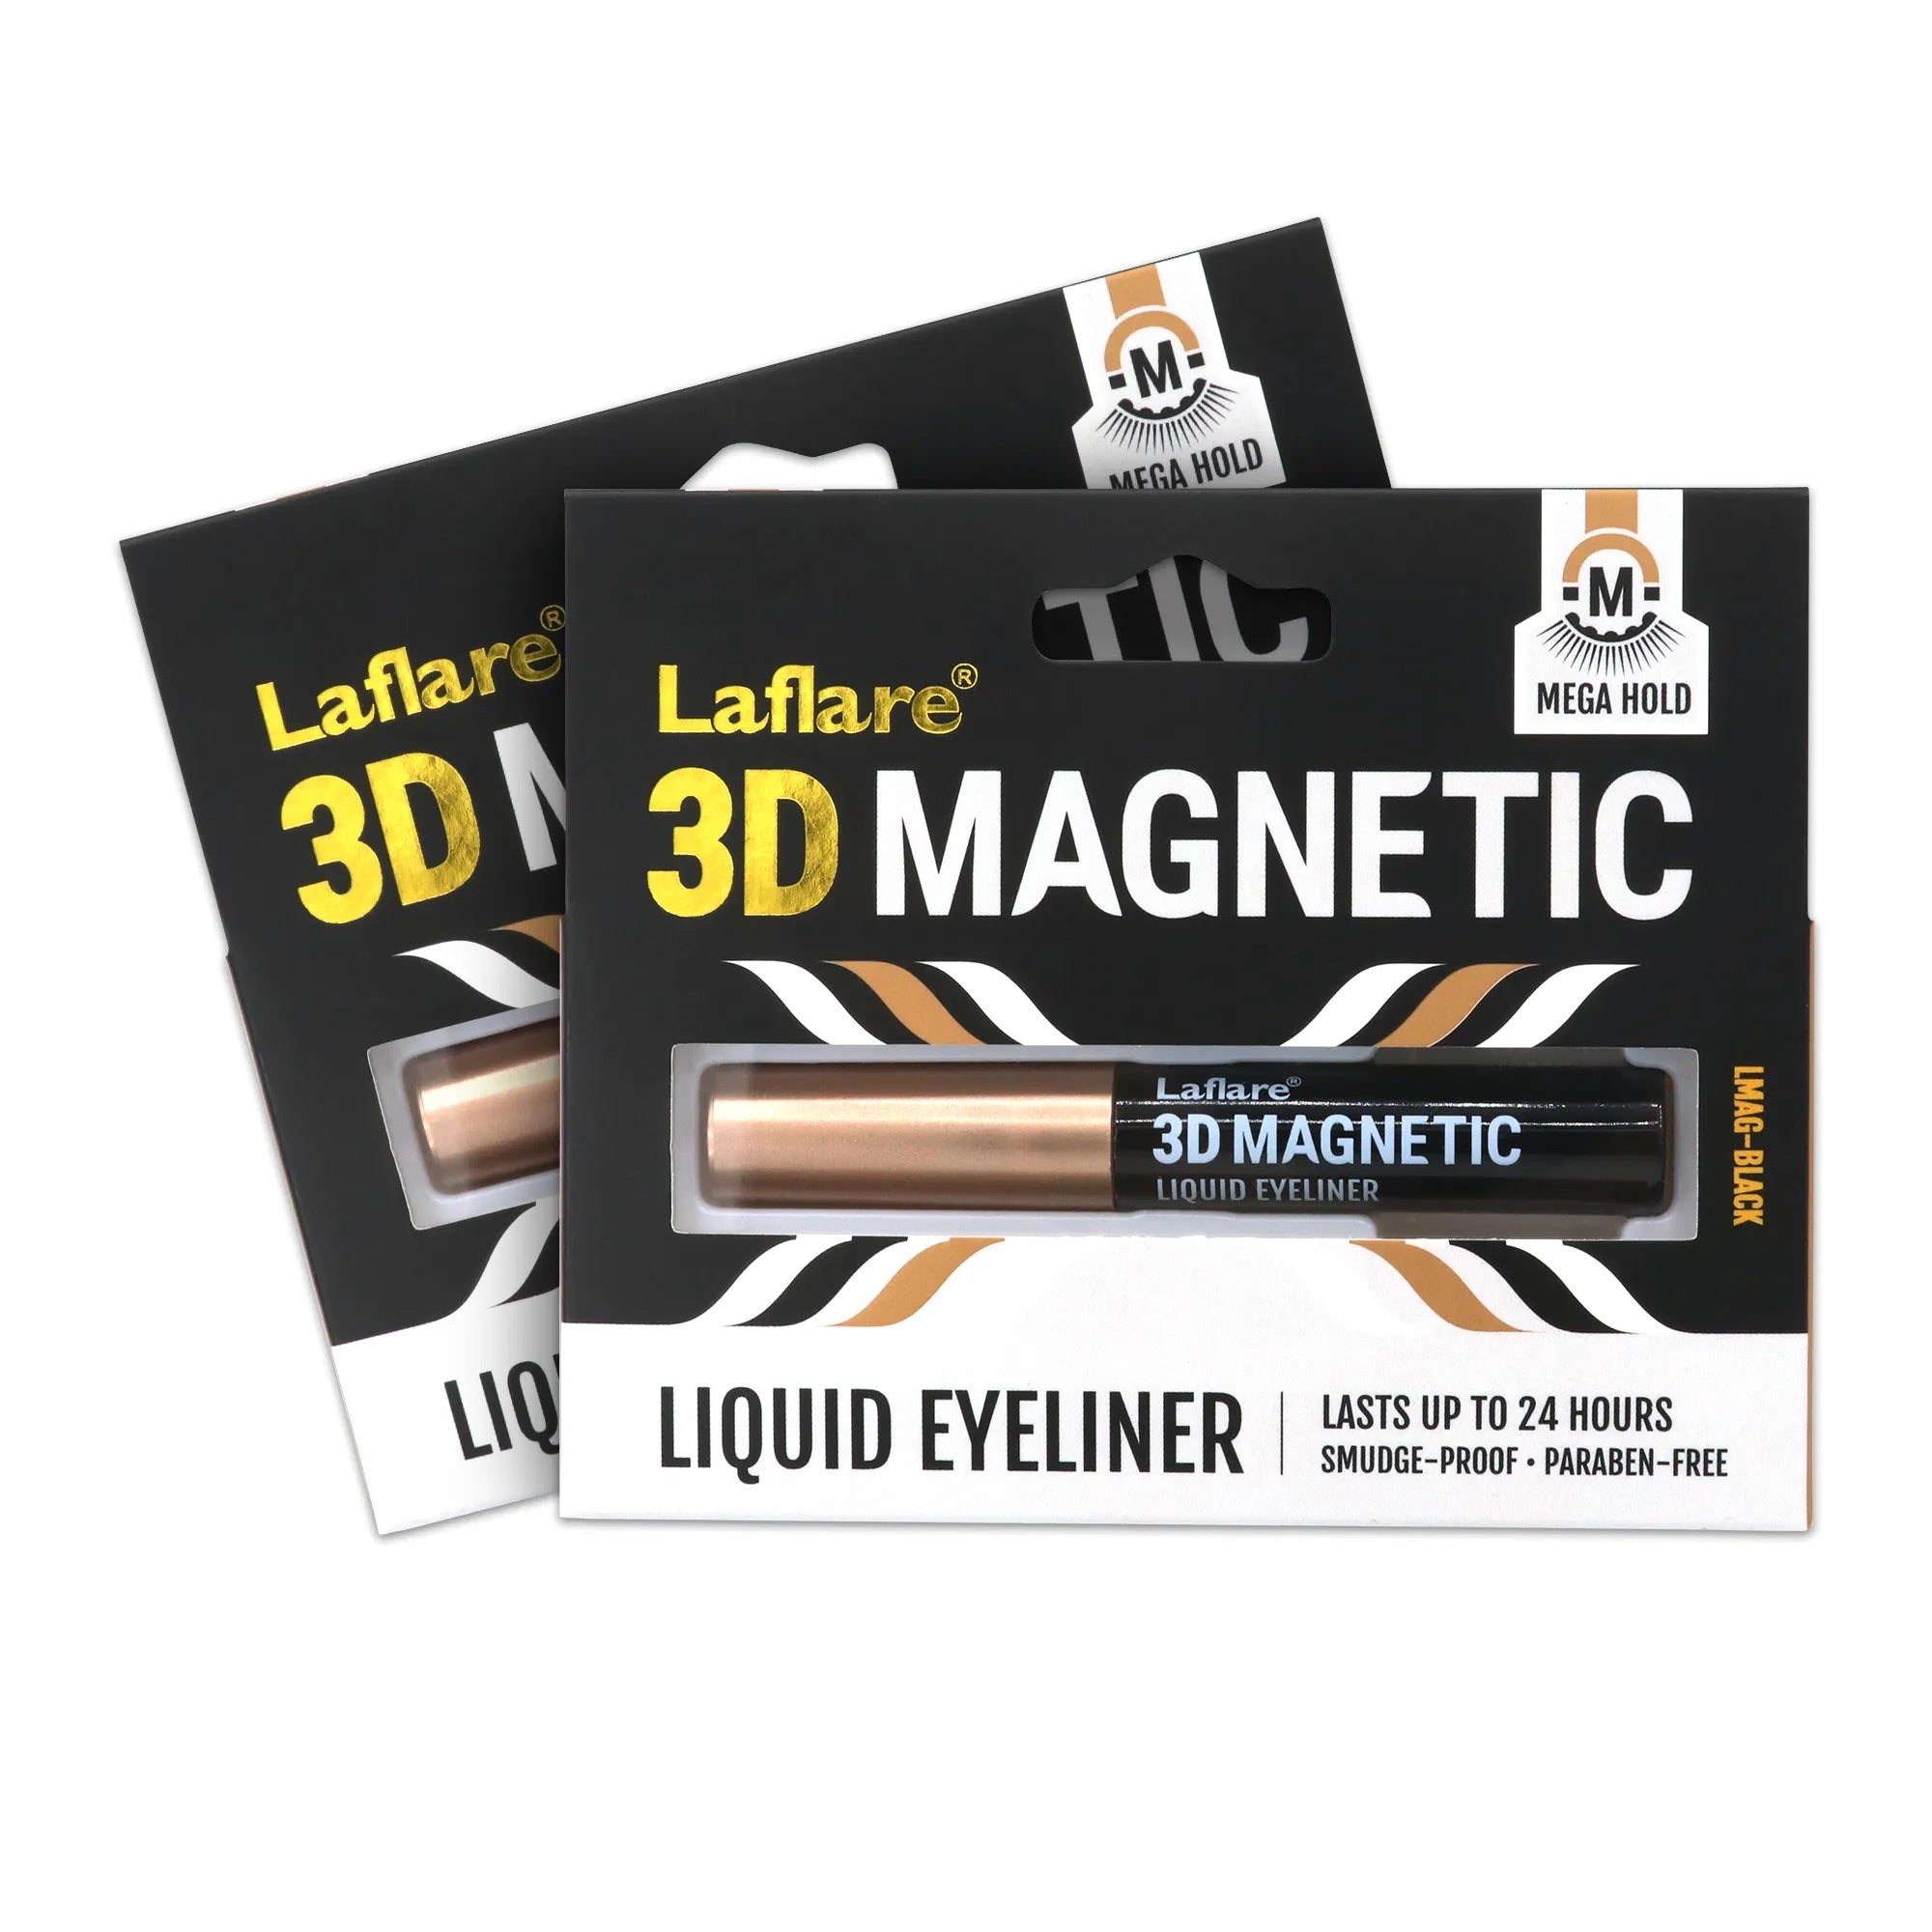 Laflare- 3D MAGNETIC LIQUID EYELINER